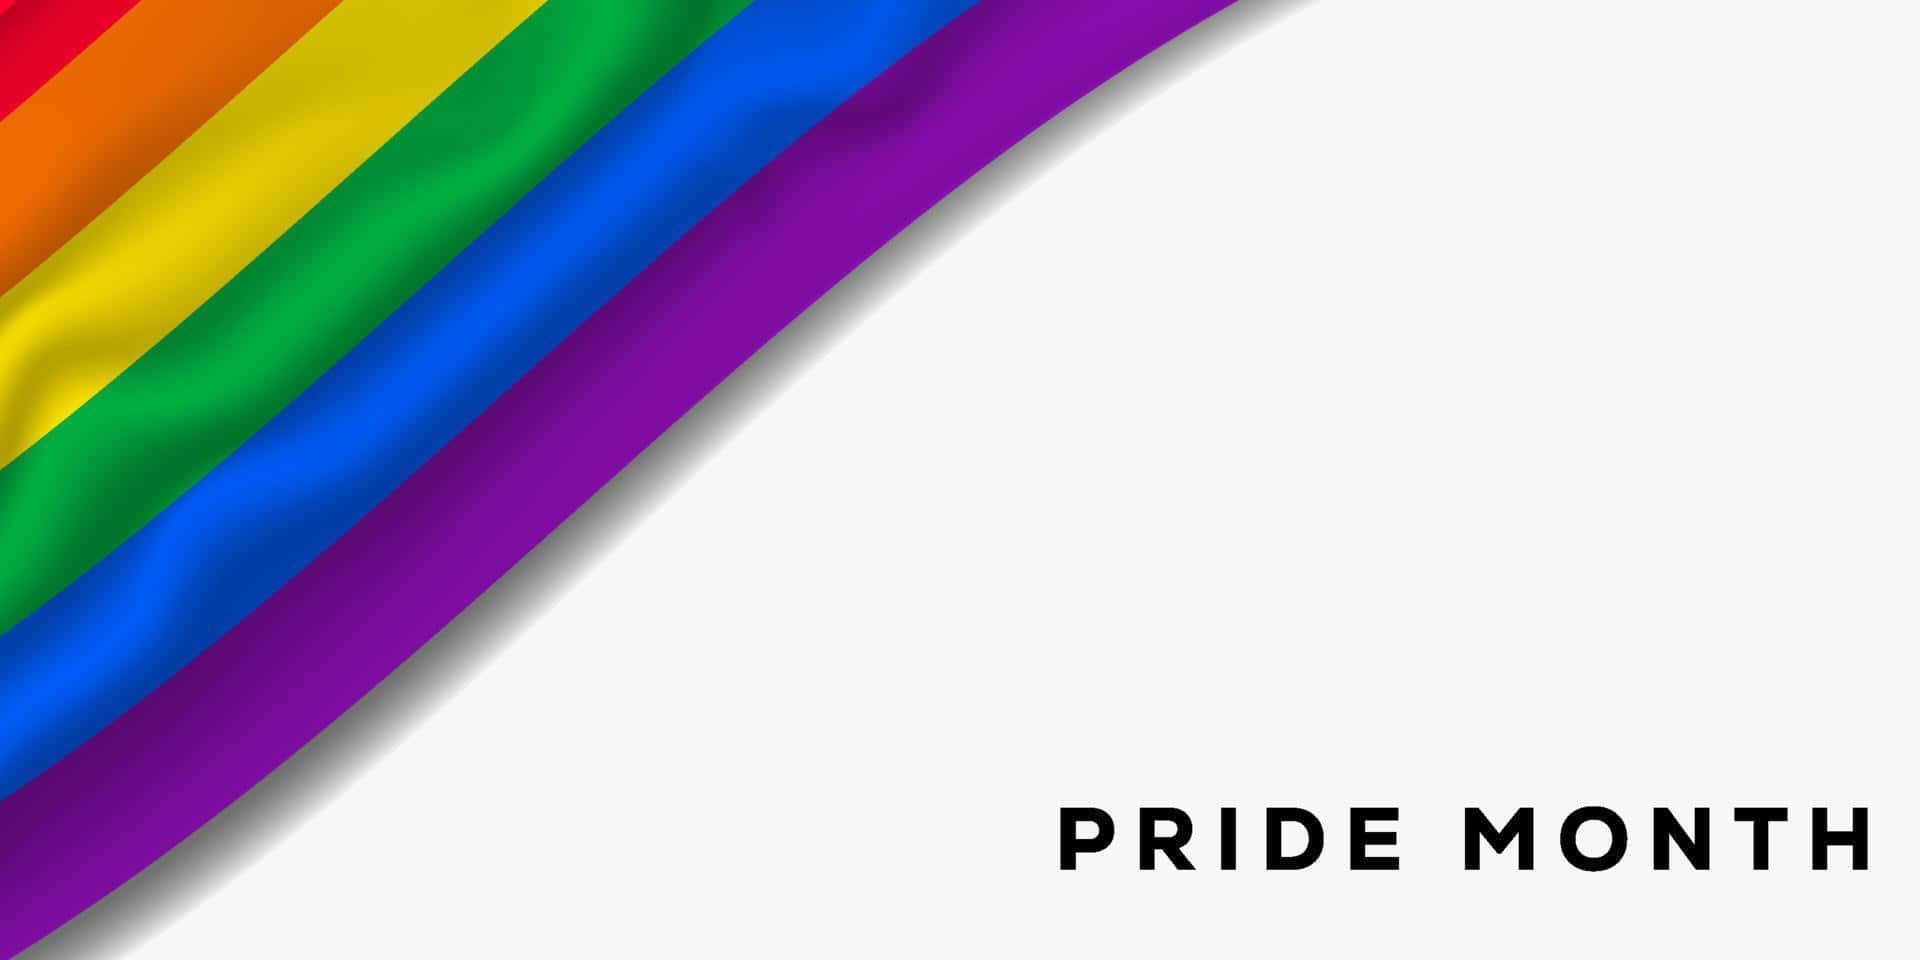 Ettsymbol För Acceptans Och Inkludering, Denna Färgglada Regnbågsflagga Vajar I Jämlikhetens Och Kärlekens Vindar.